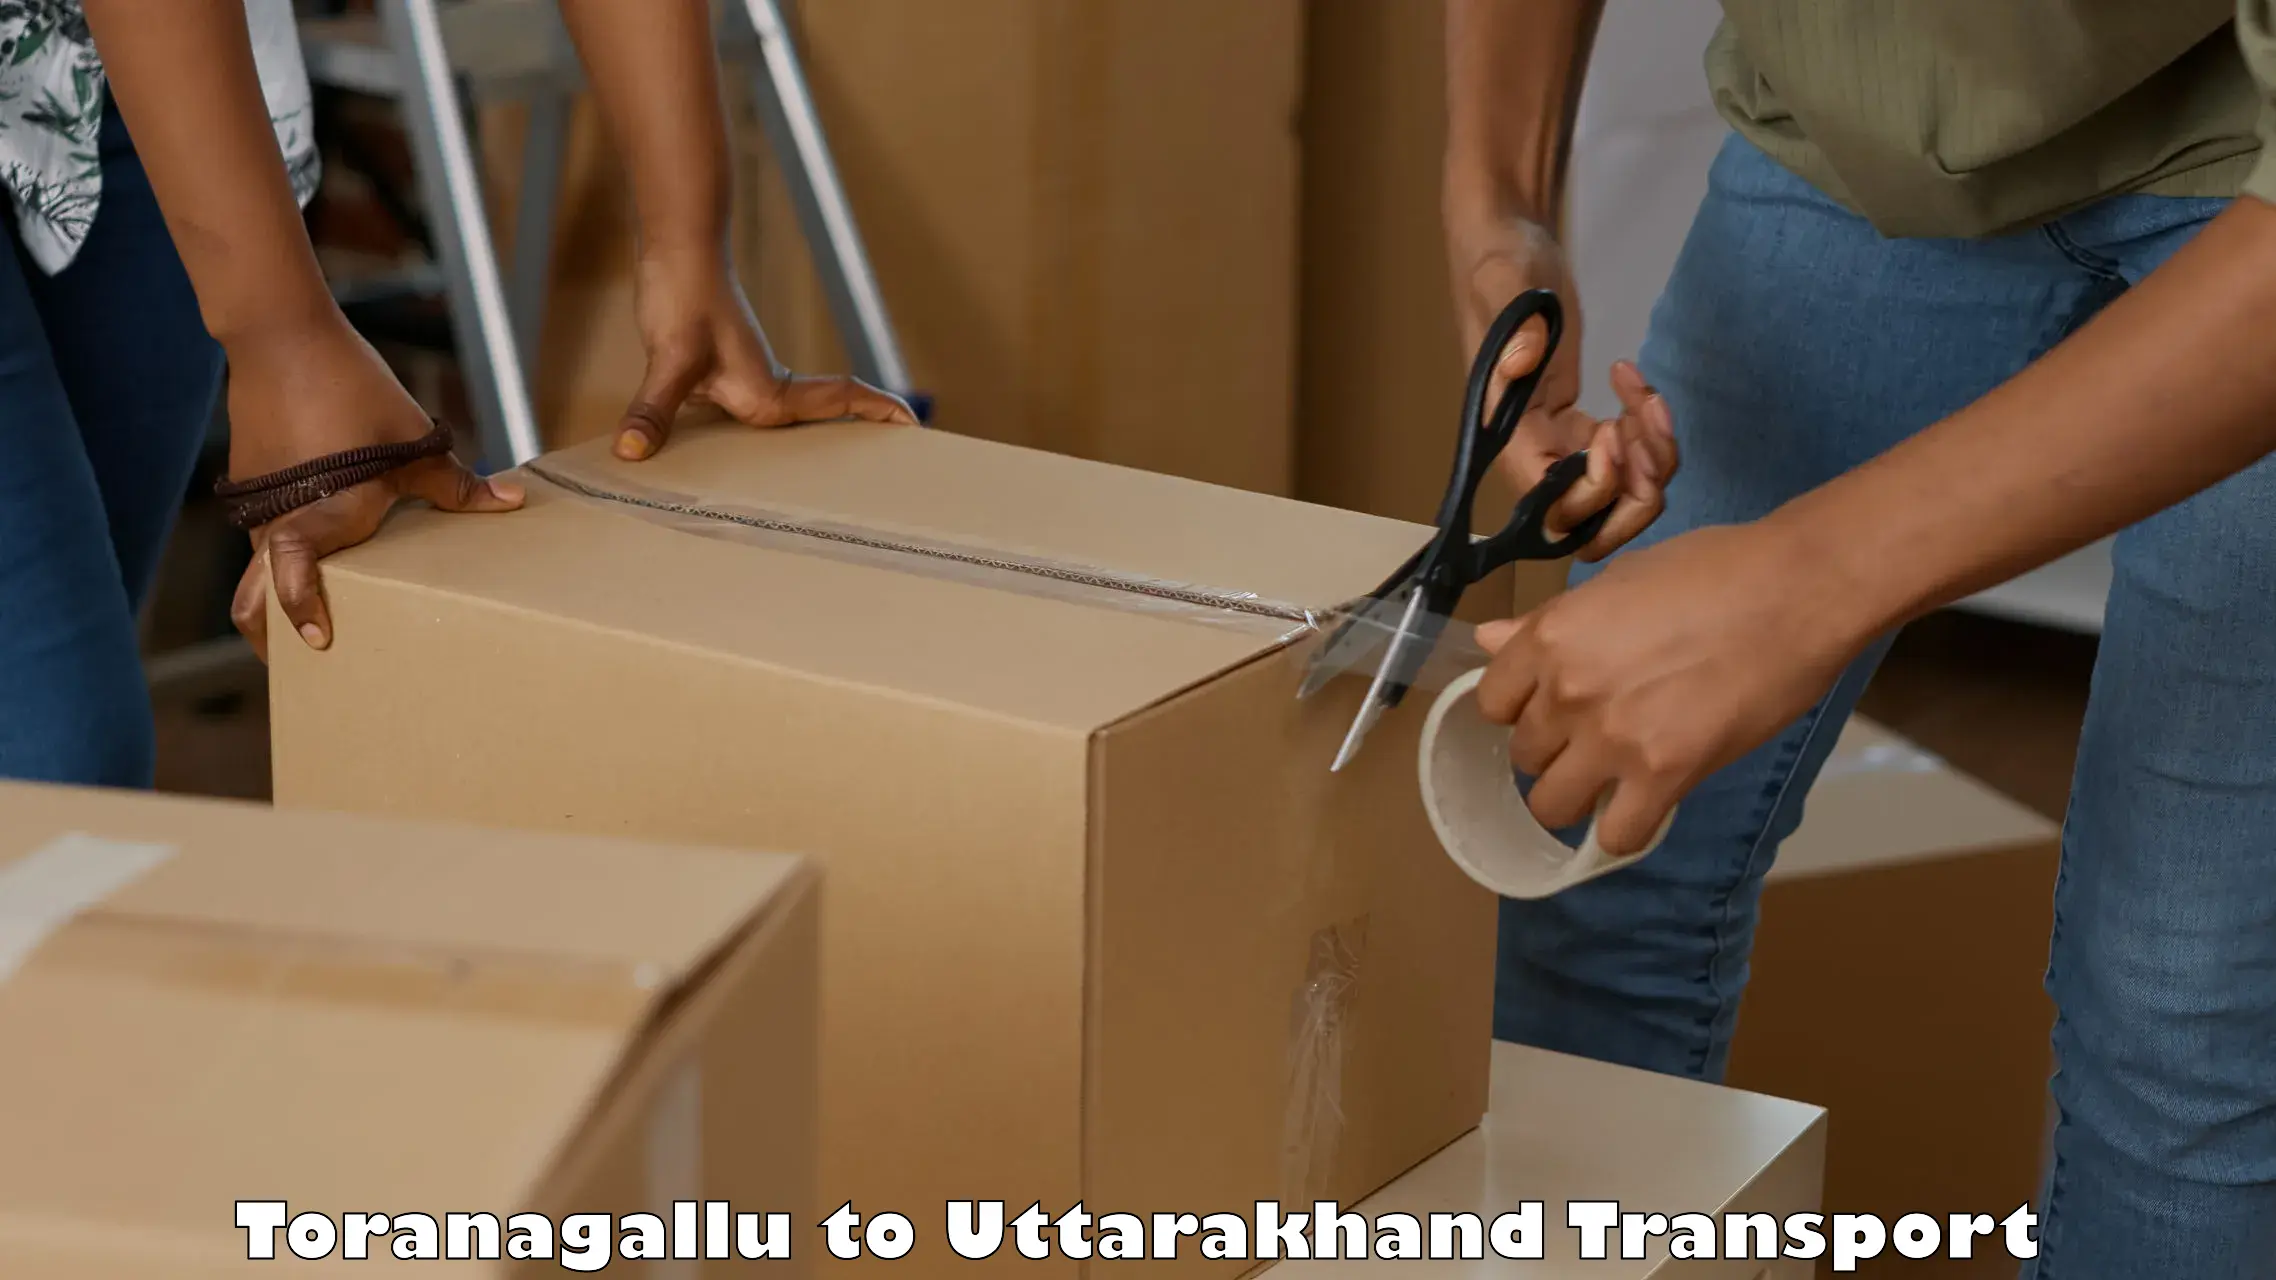 Best transport services in India Toranagallu to Uttarakhand